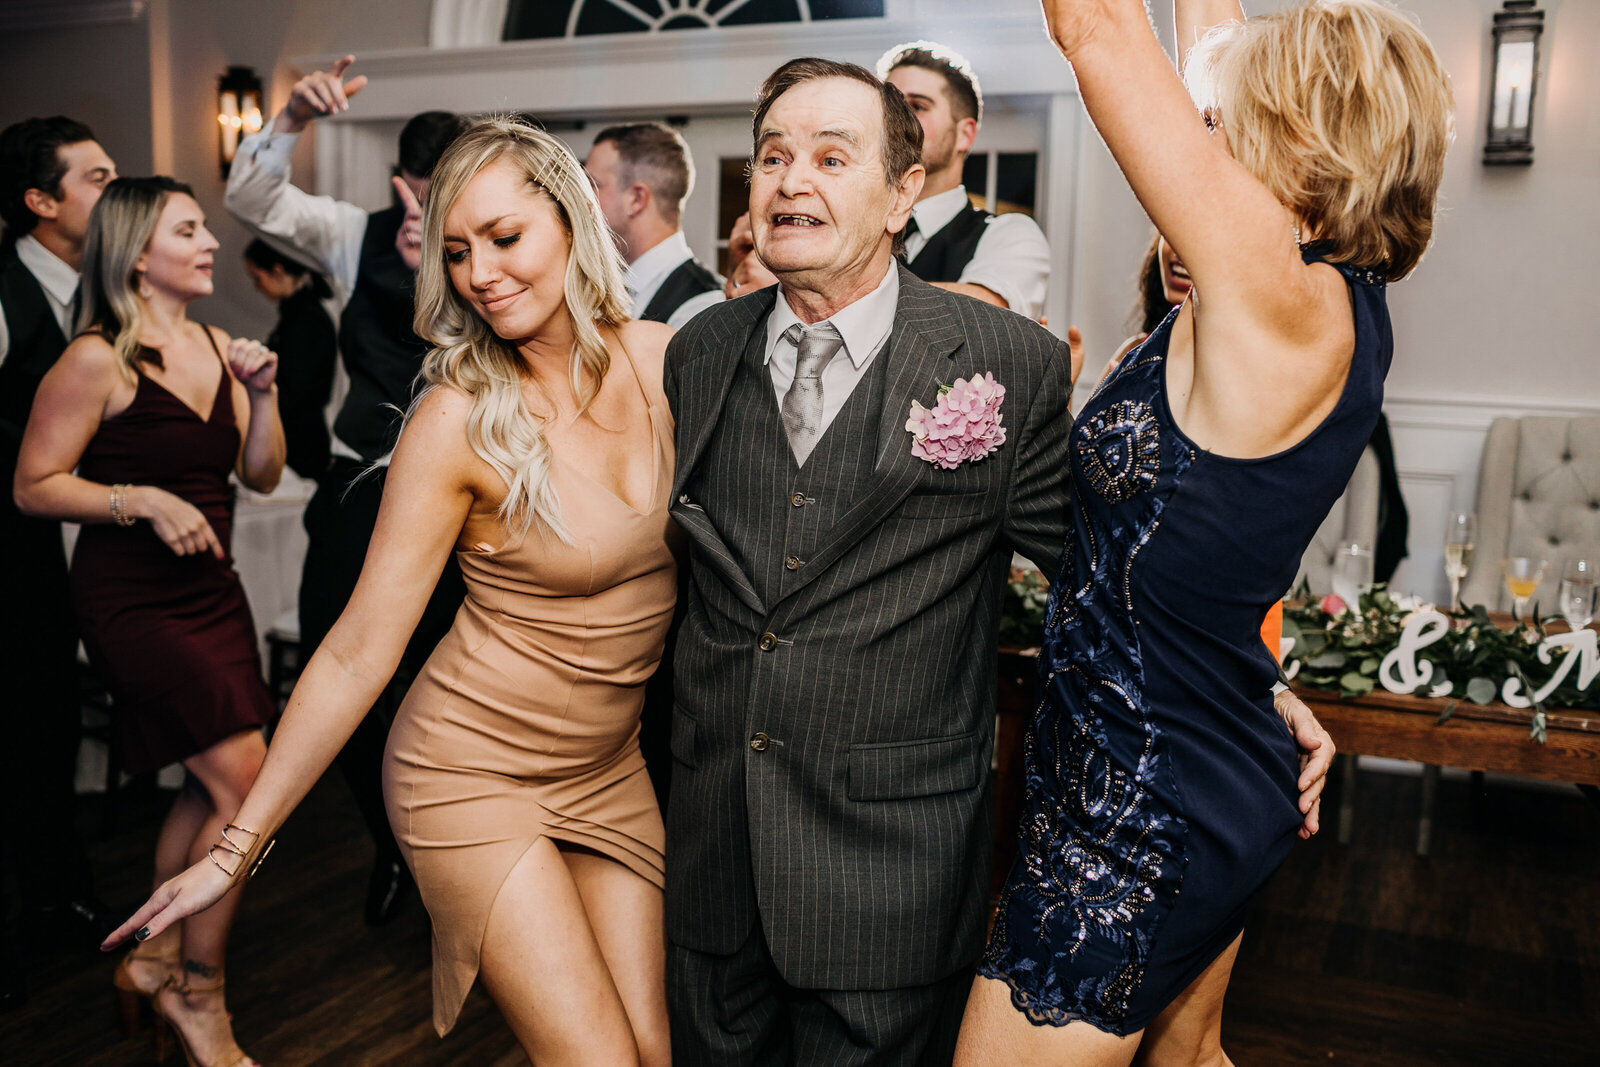 grandpa dancing wedding